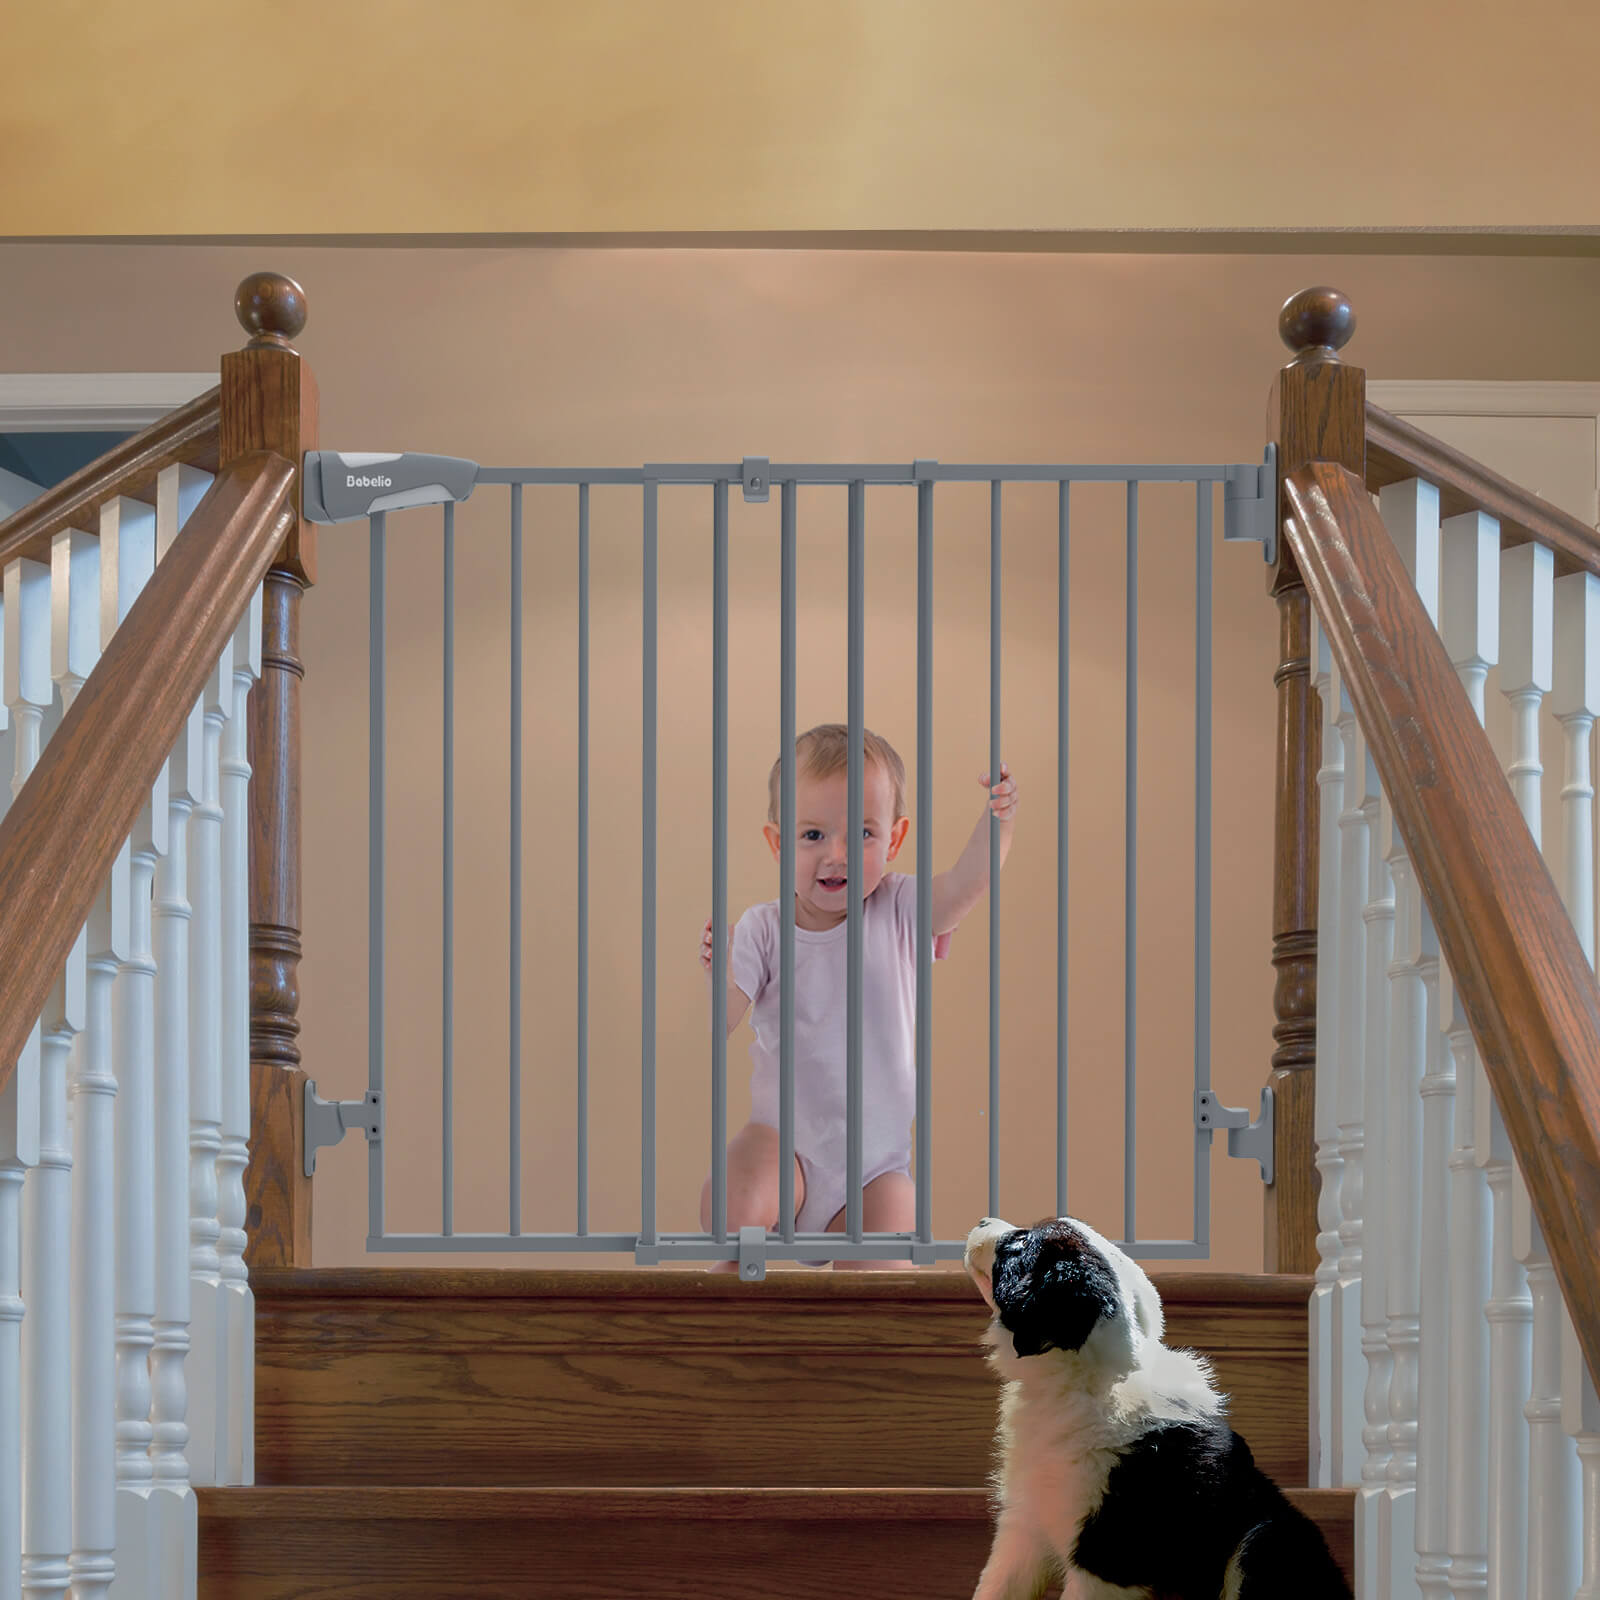 Babelio 26-43" Baby/Pet Gate - No Bottom Bar, 2-in-1 Safety, Walk-Thru Door